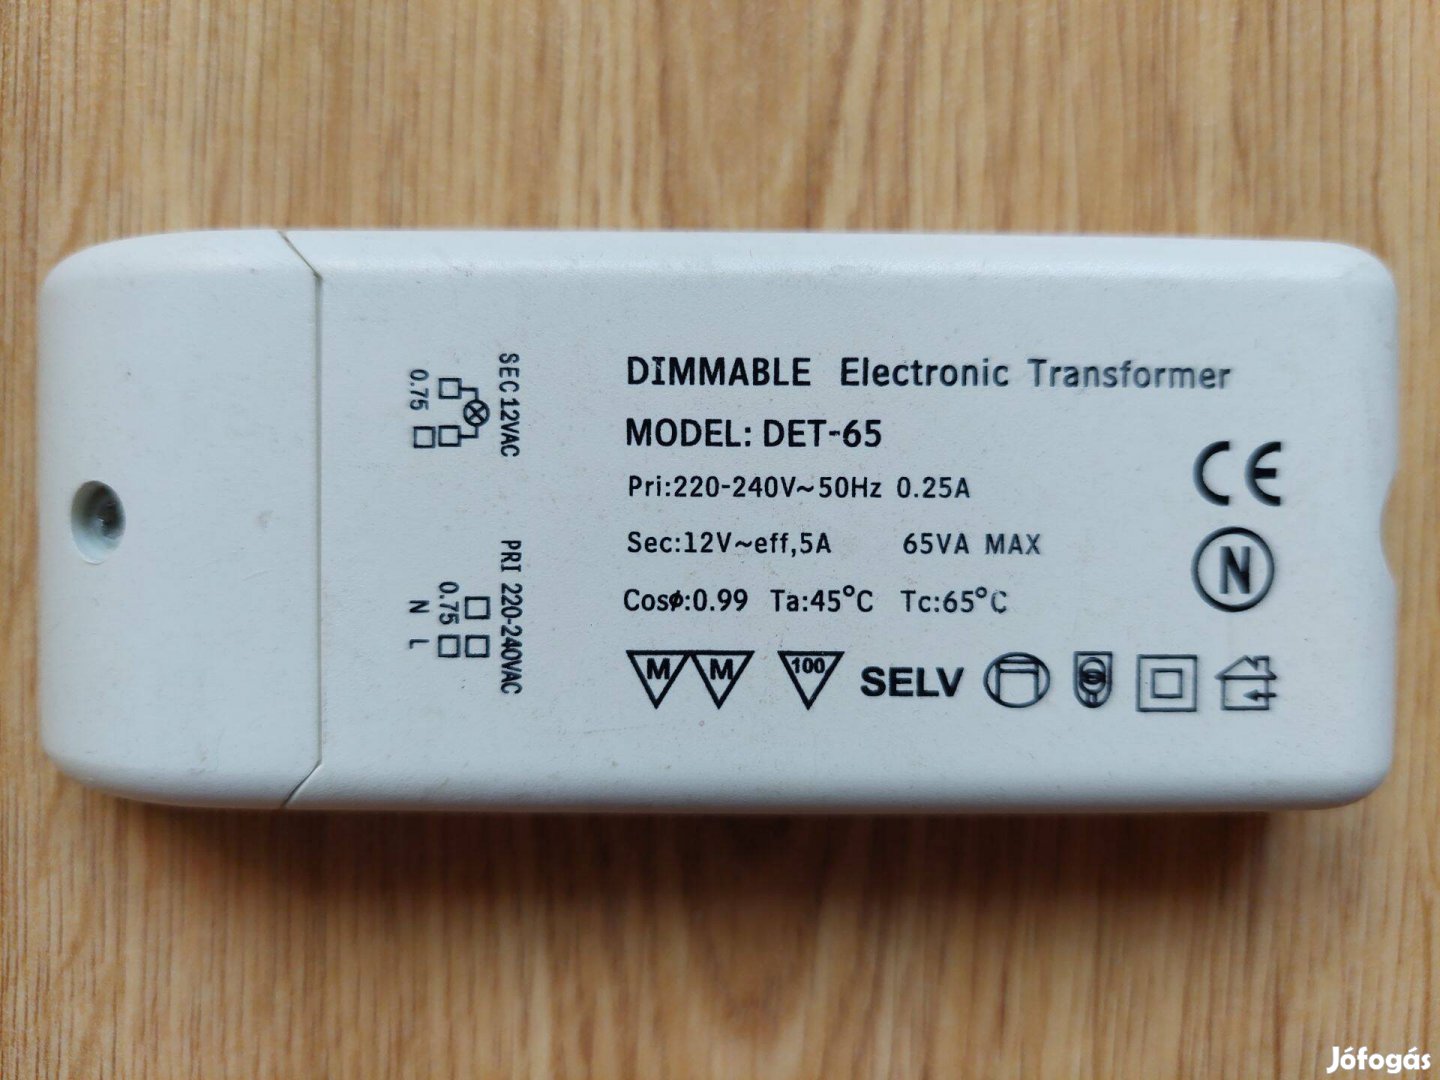 Dimmable Fényerőszabályozható elektronikus transzformátor DET-65